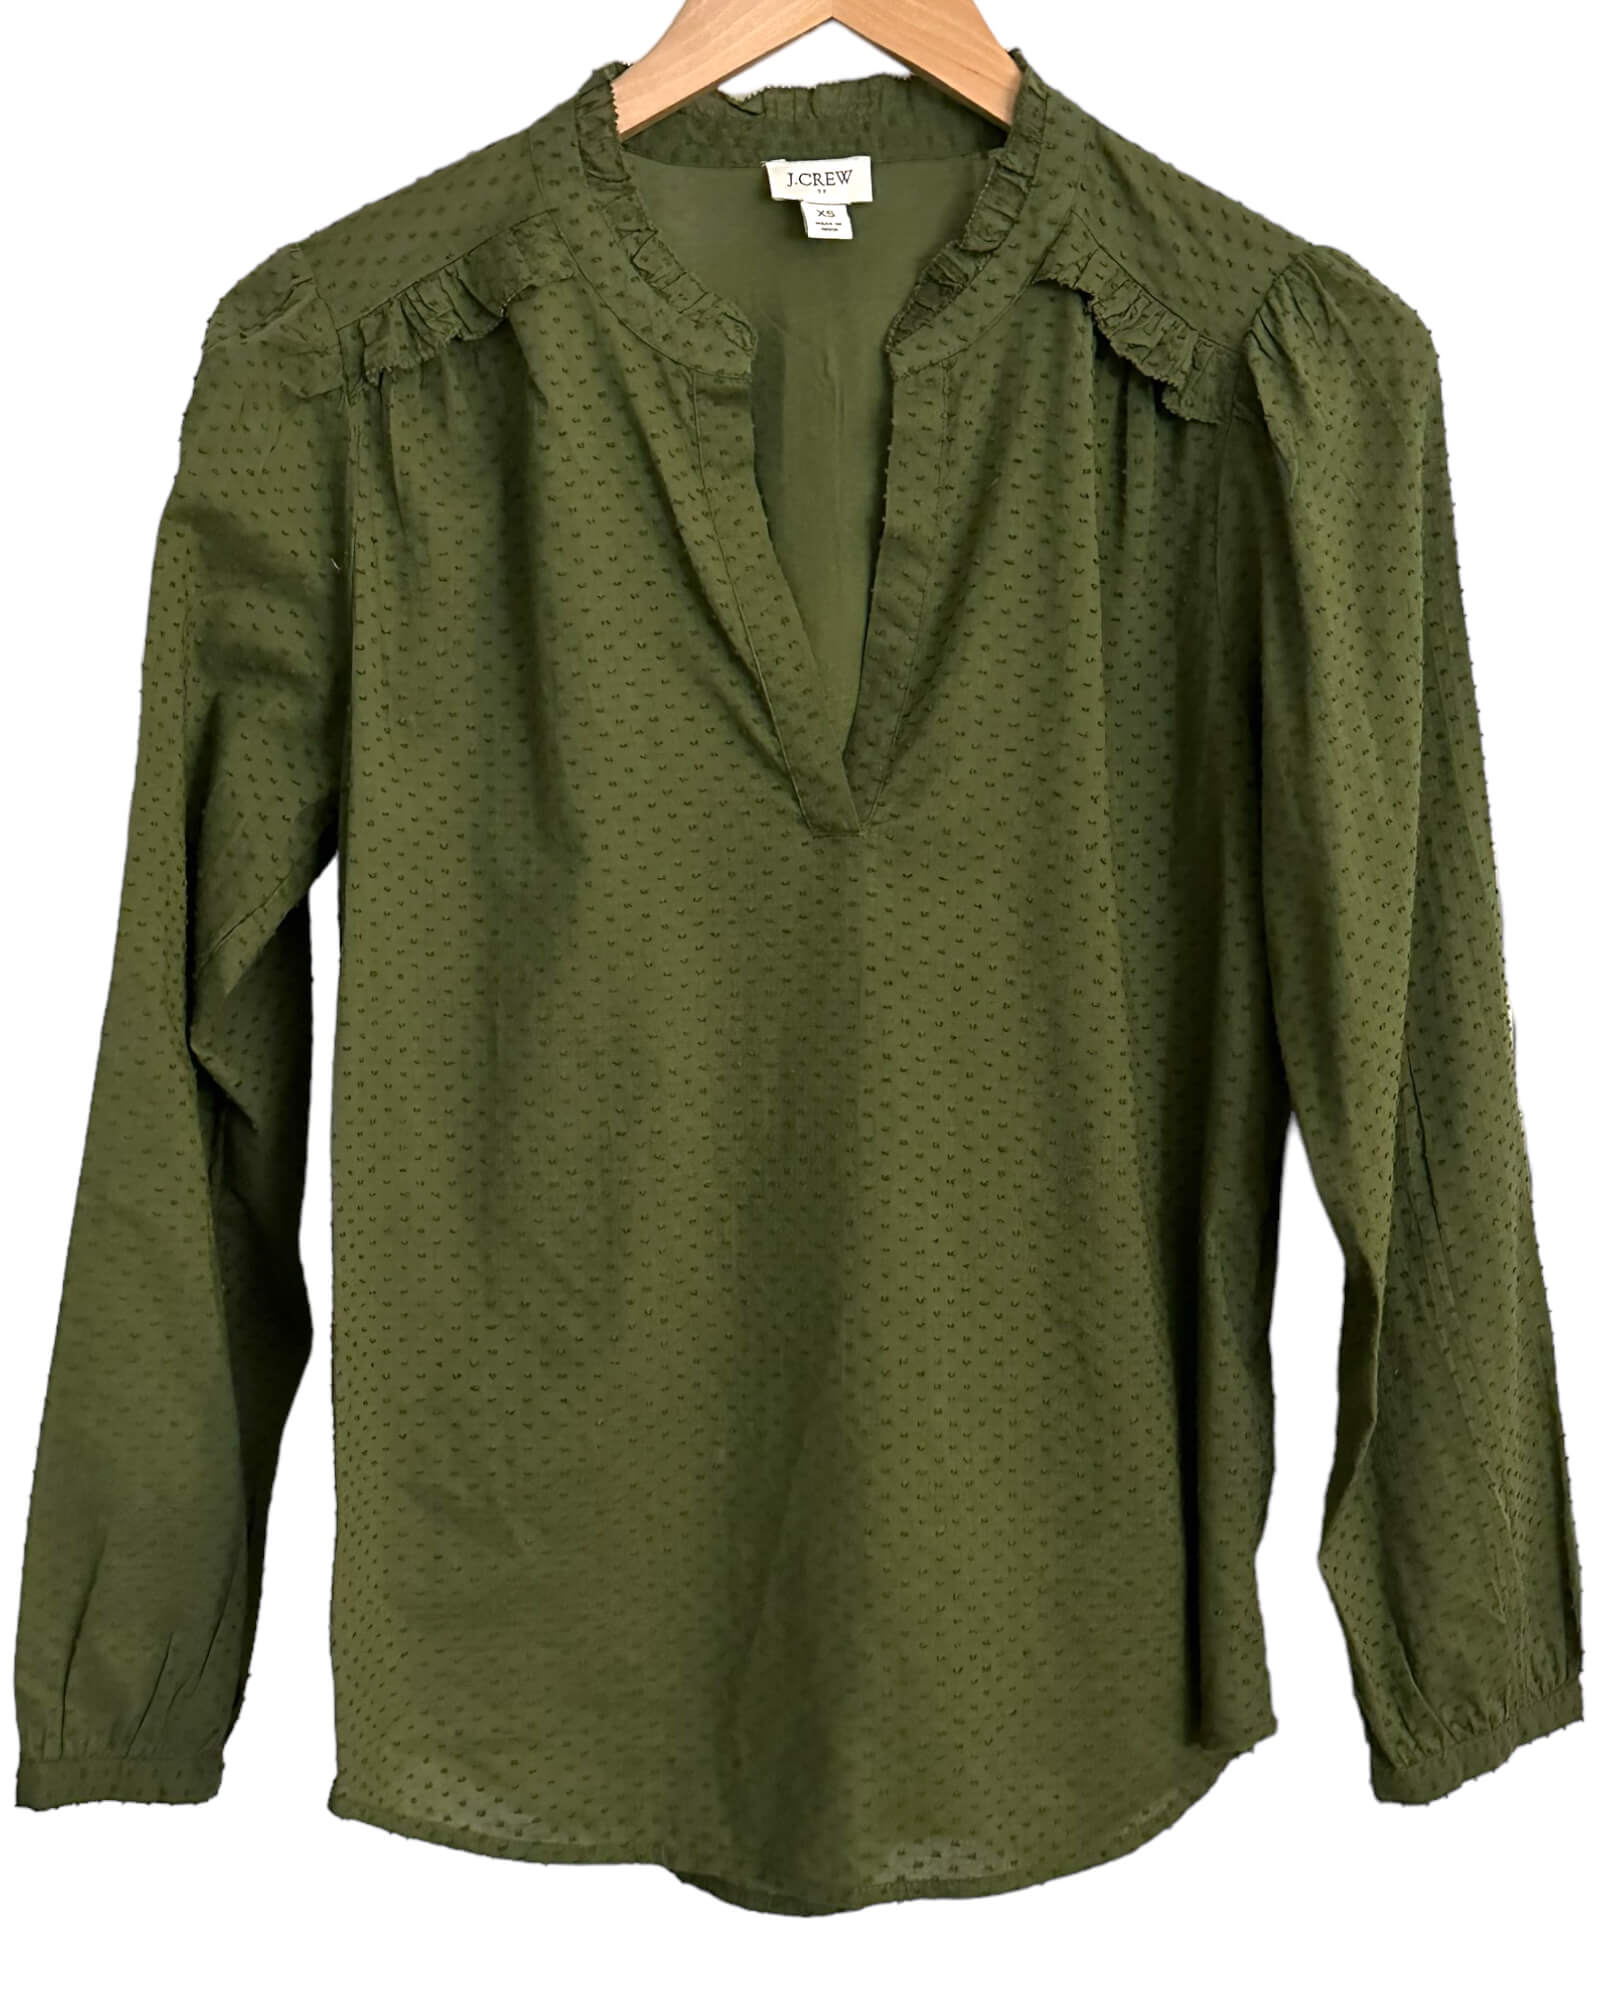 Warm Autumn J.CREW tarragon green ruffle dot shirt